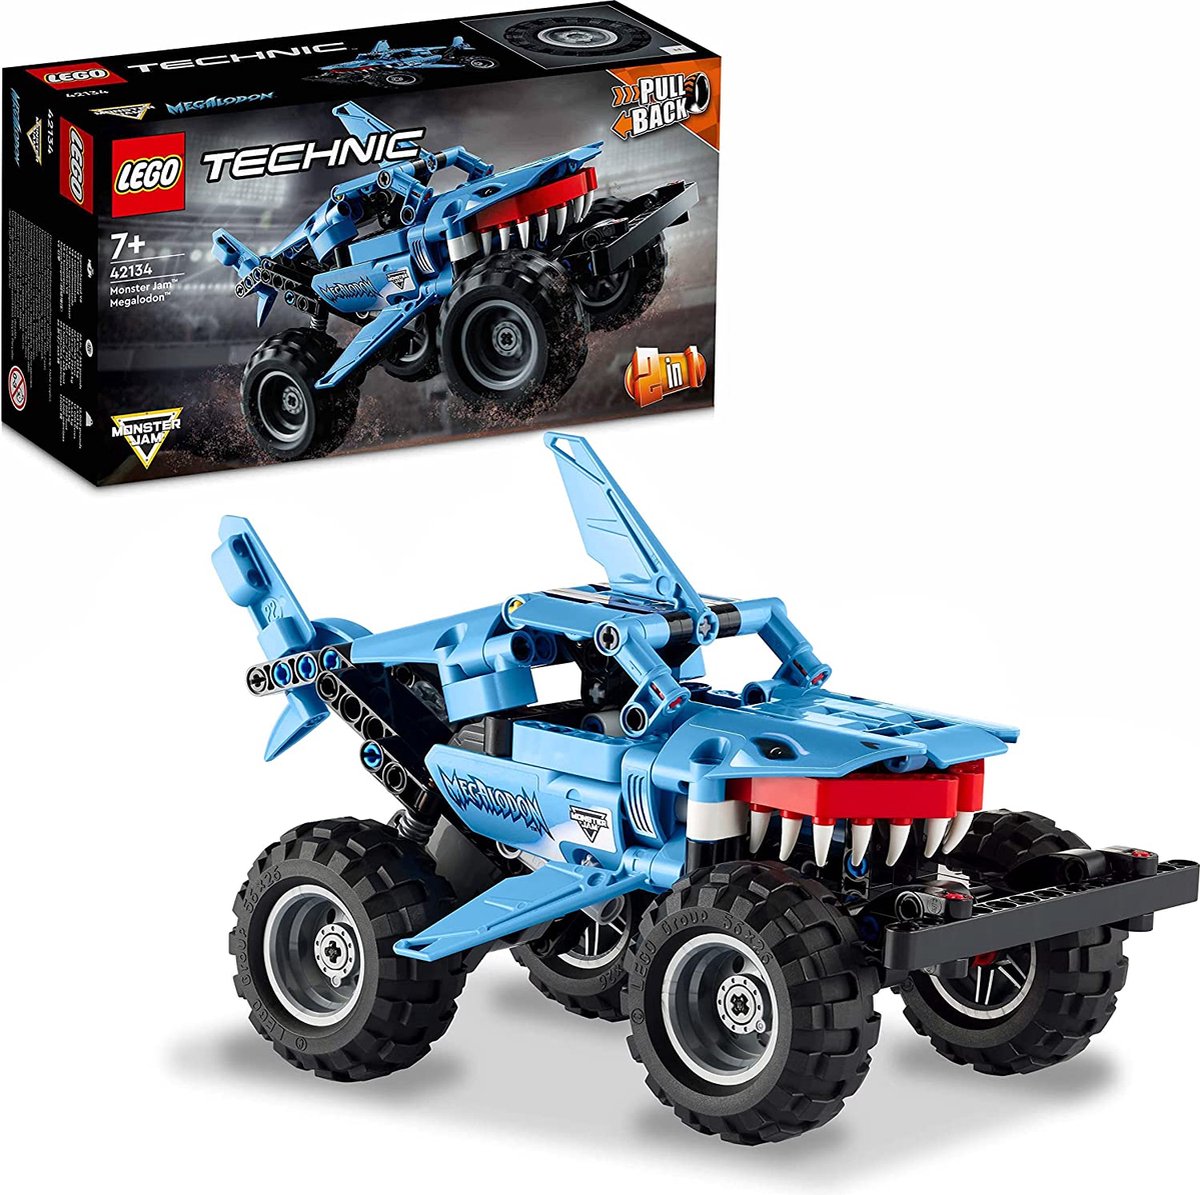 LEGO Technic 2 in1 Pull-Back Monster Jam Truck - Megalodon